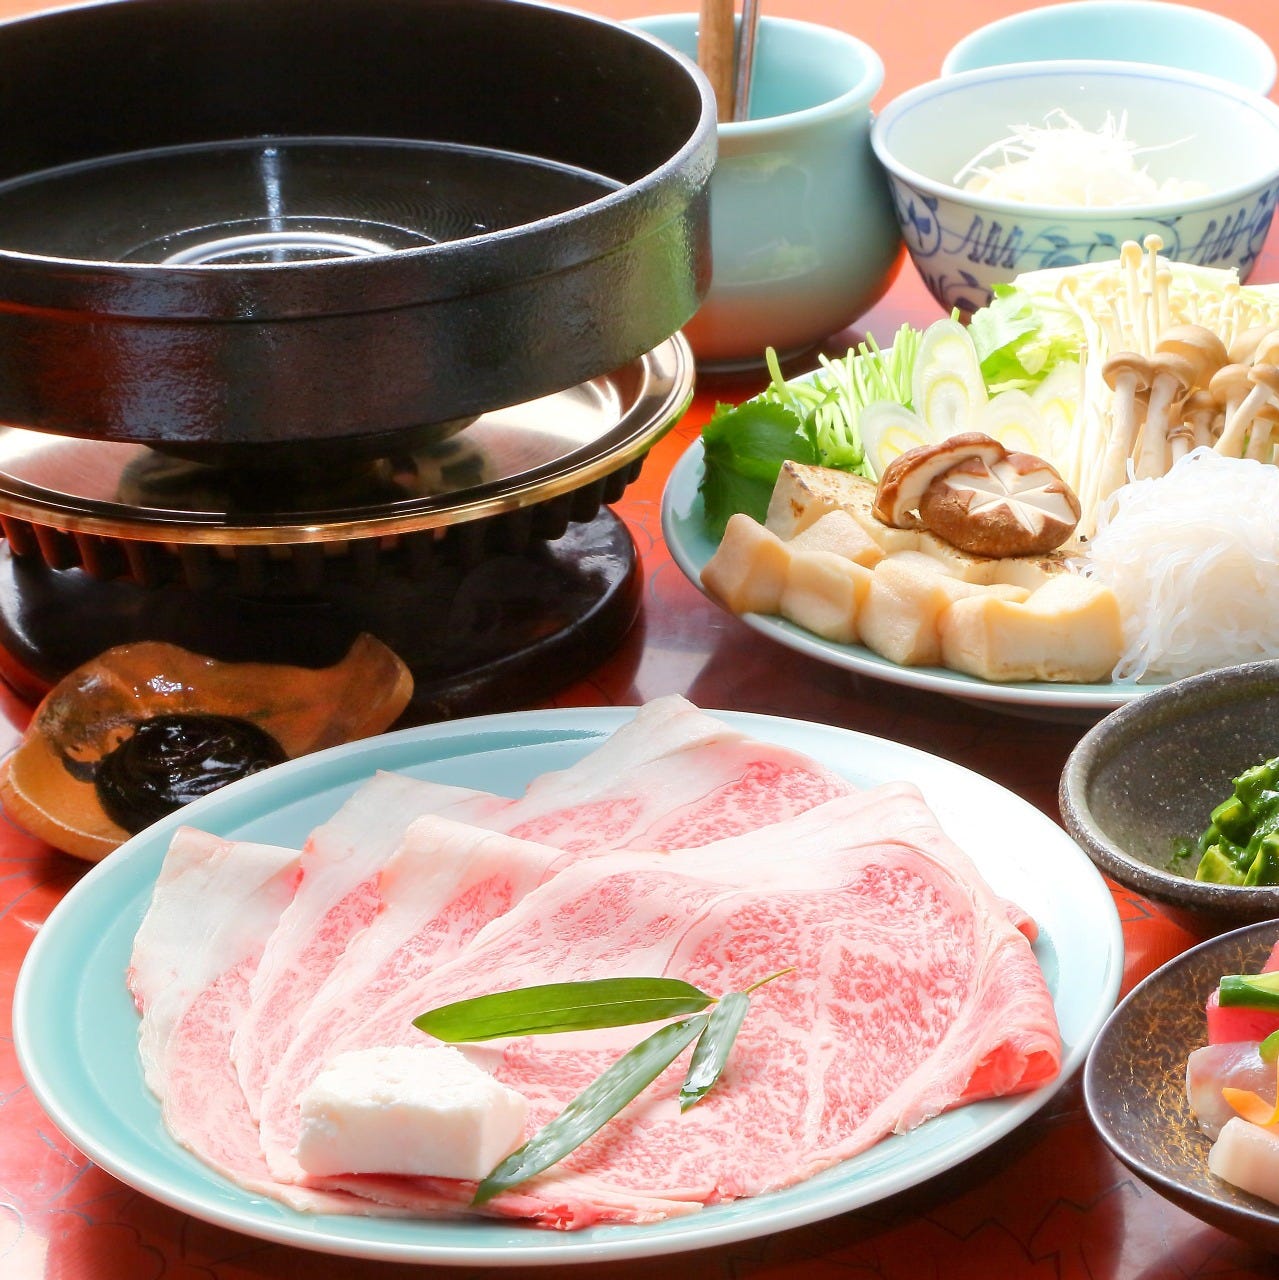 テーブルの上に江戸菊の「すき焼きコース-A5ランクの国産黒毛和牛霜降り肉と新鮮海鮮を食す-」が置かれている